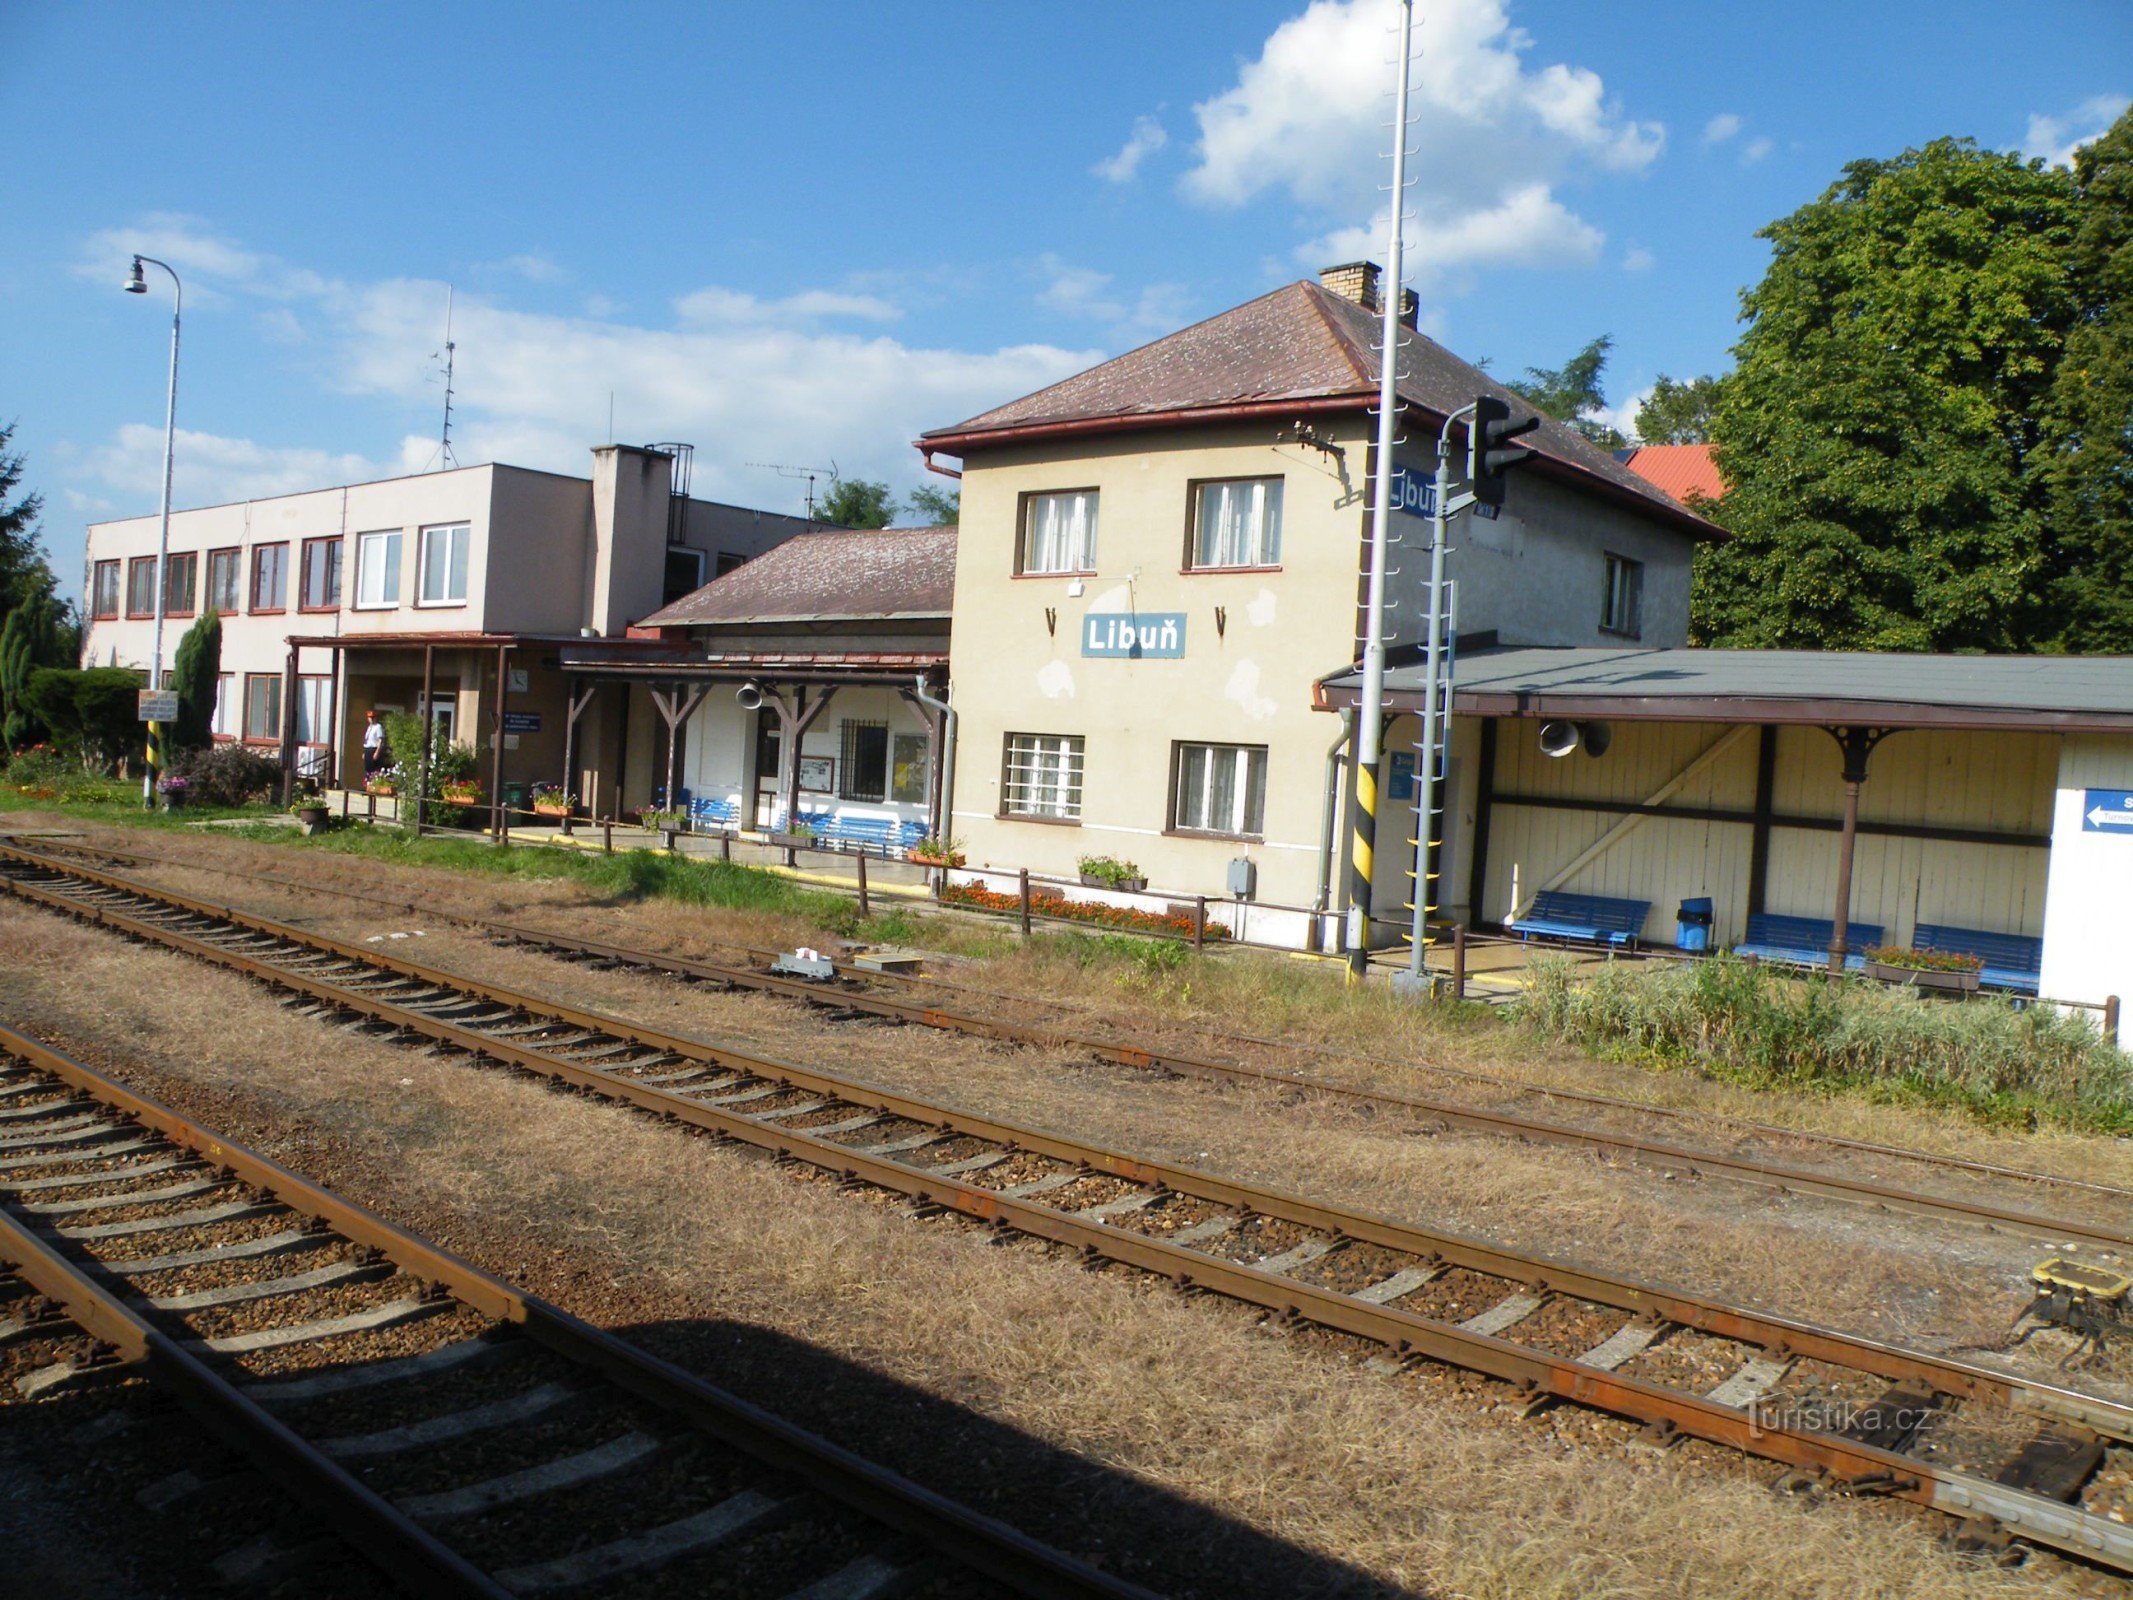 Libuň - vasútállomás